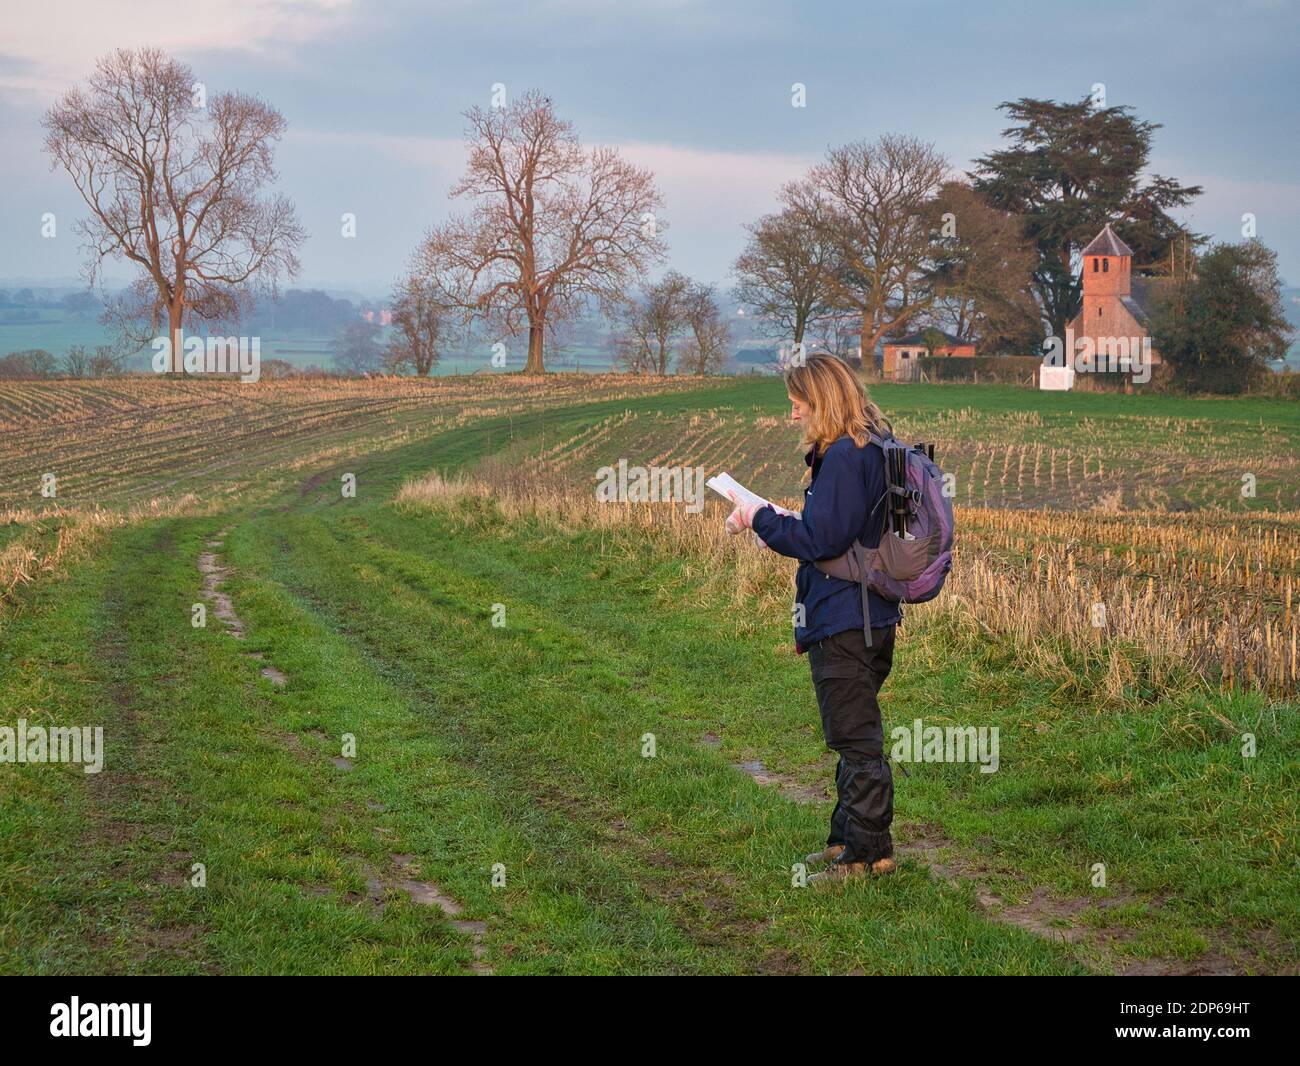 Una sola mujer caminadora en marcha en una ruta a través de un campo de corte de rastrojo de cosecha comprueba su ruta con un mapa. Tomado en Cheshire, Reino Unido. Foto de stock